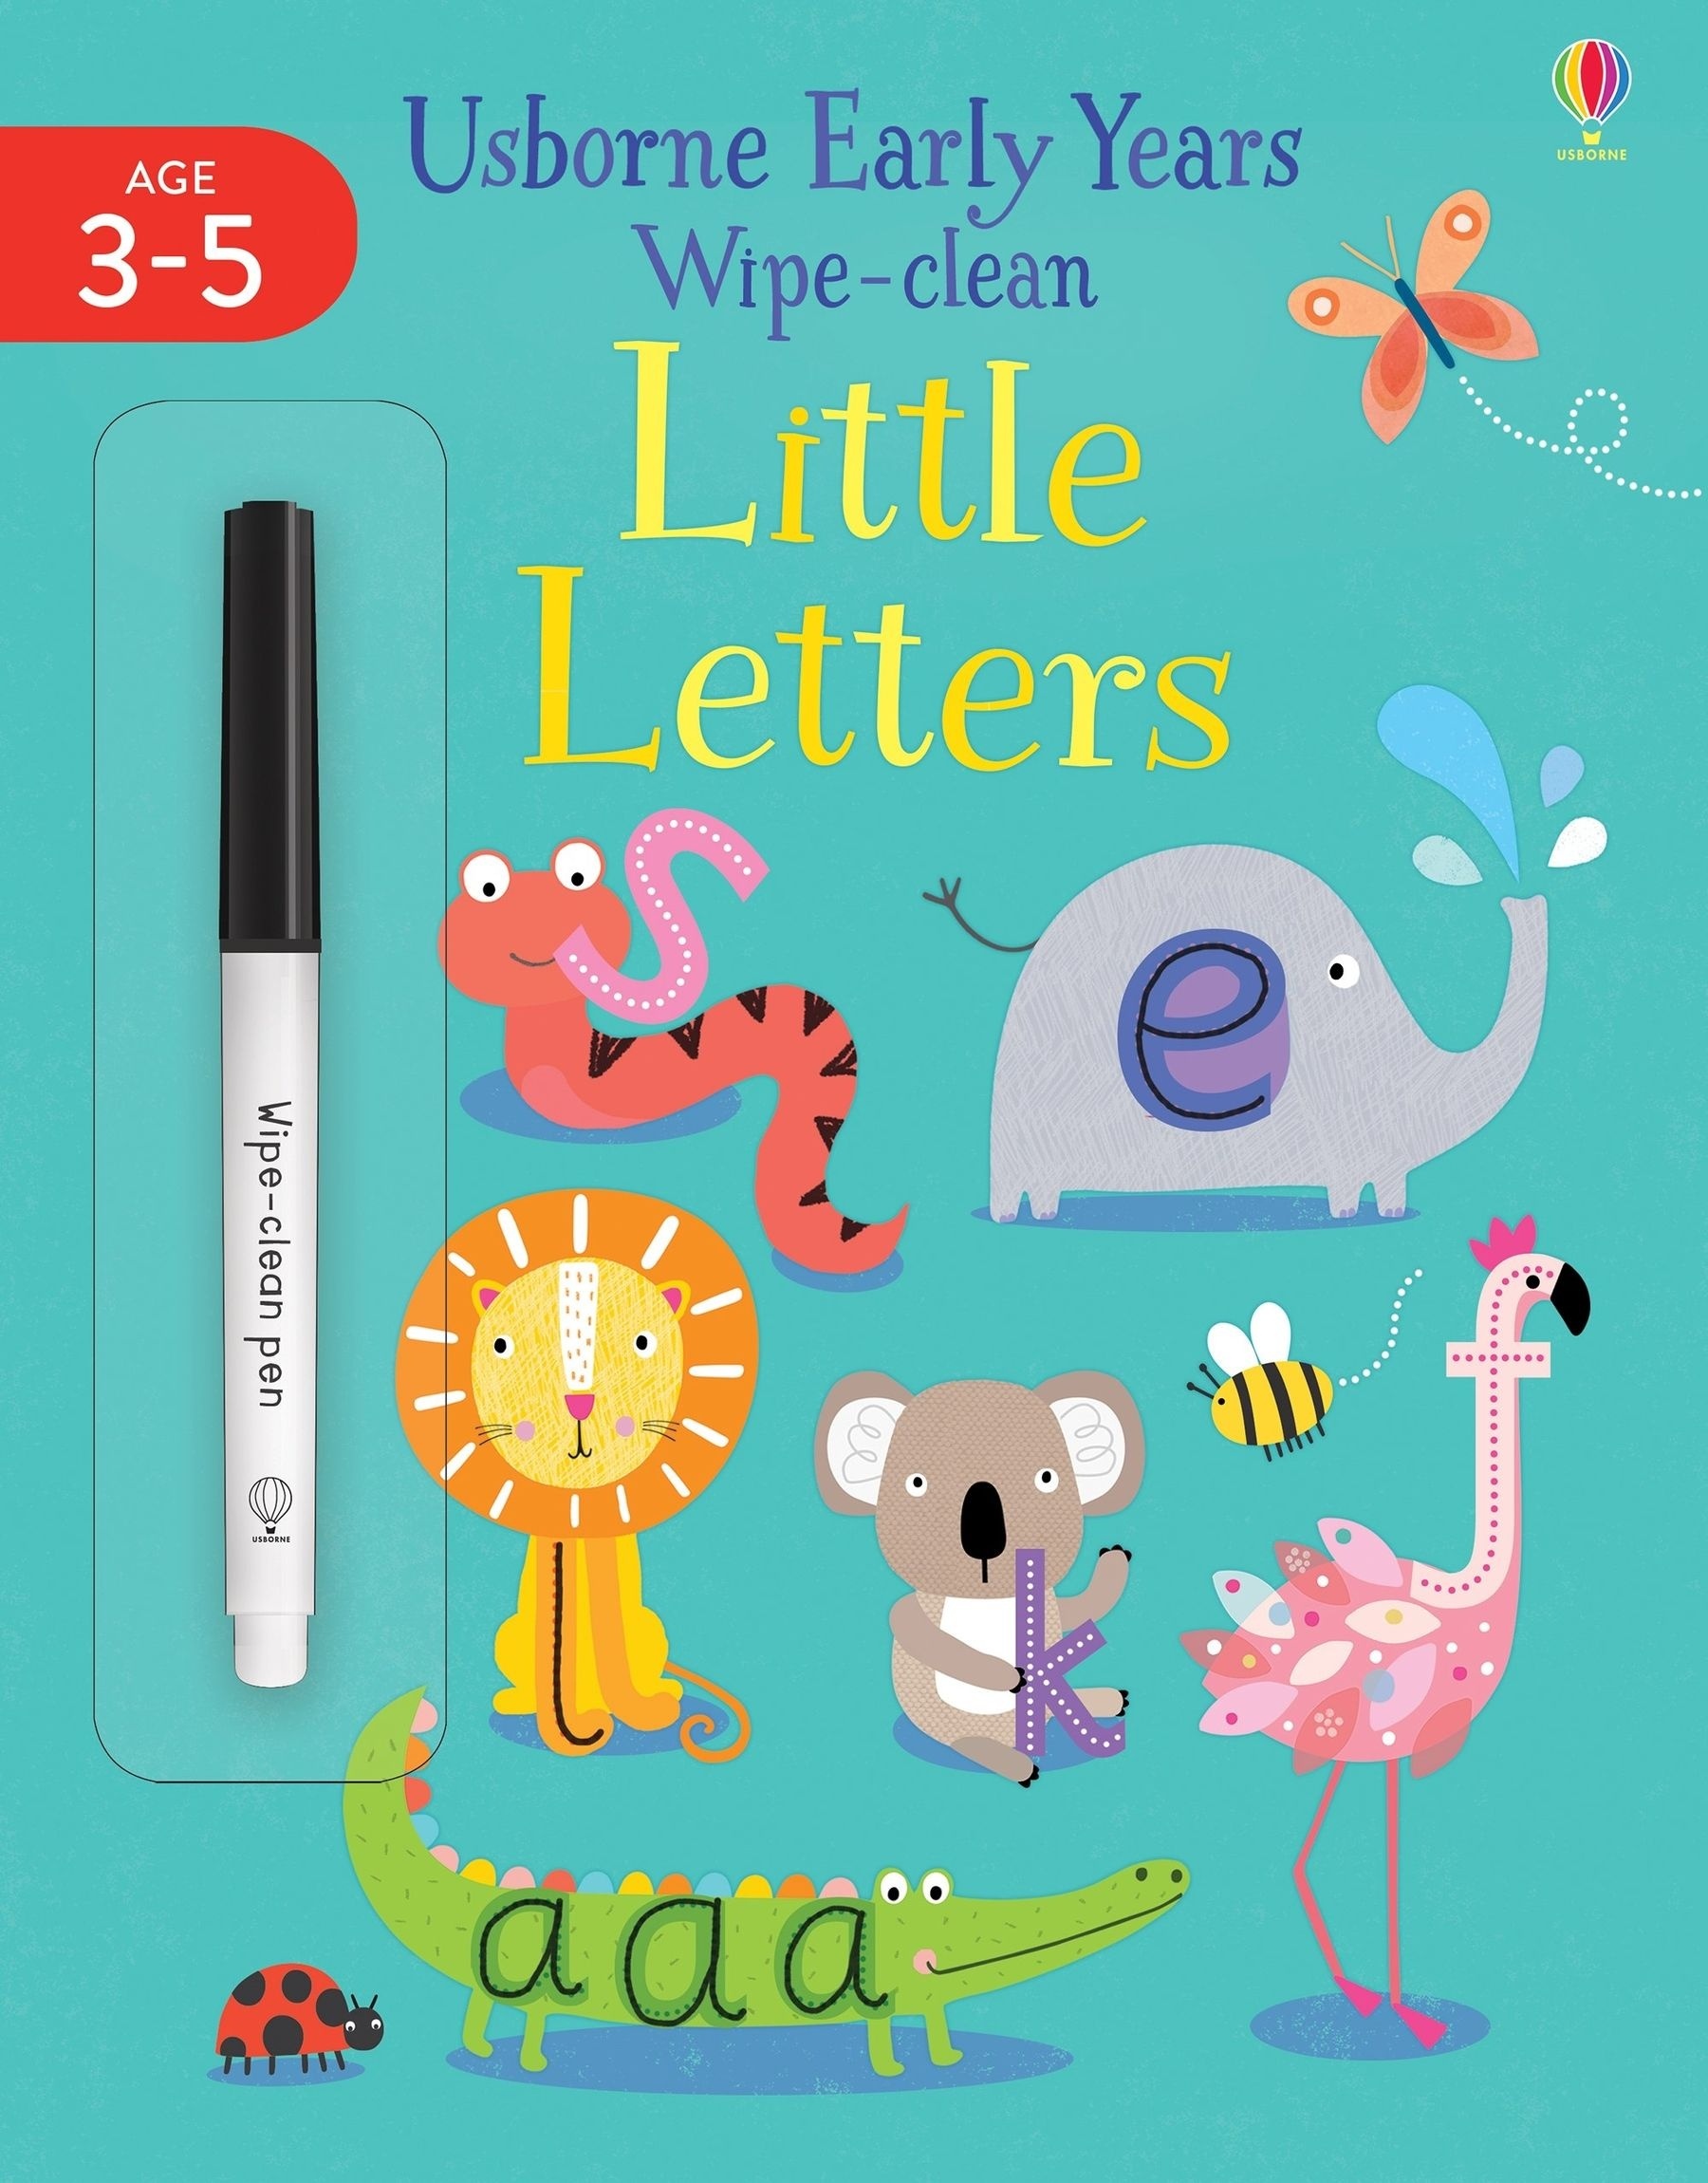 Wipe-clean Little Letters